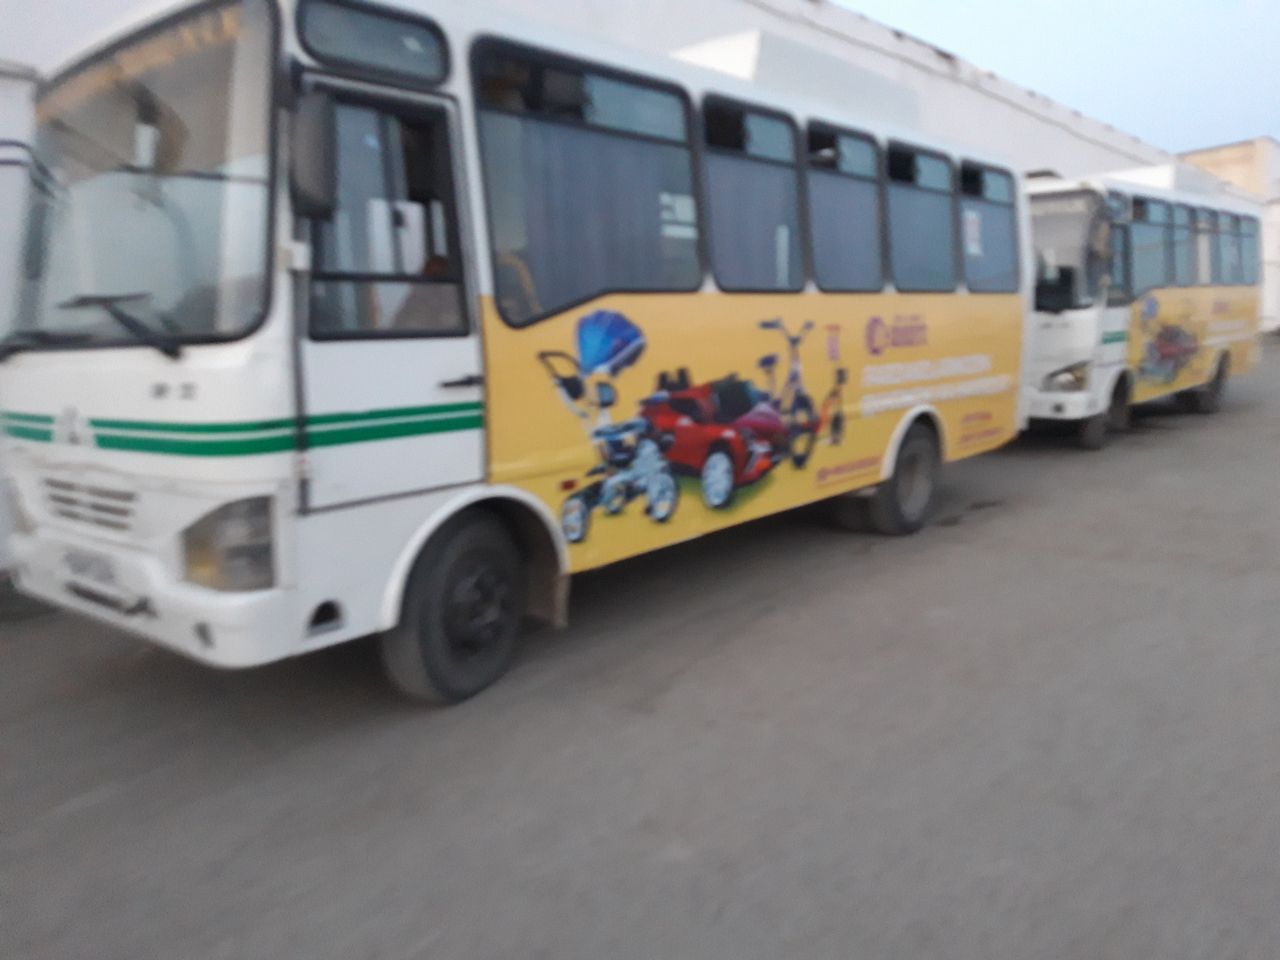 Avtobuslar tashqi qismida reklama/Реклама на Автобусах снаружи